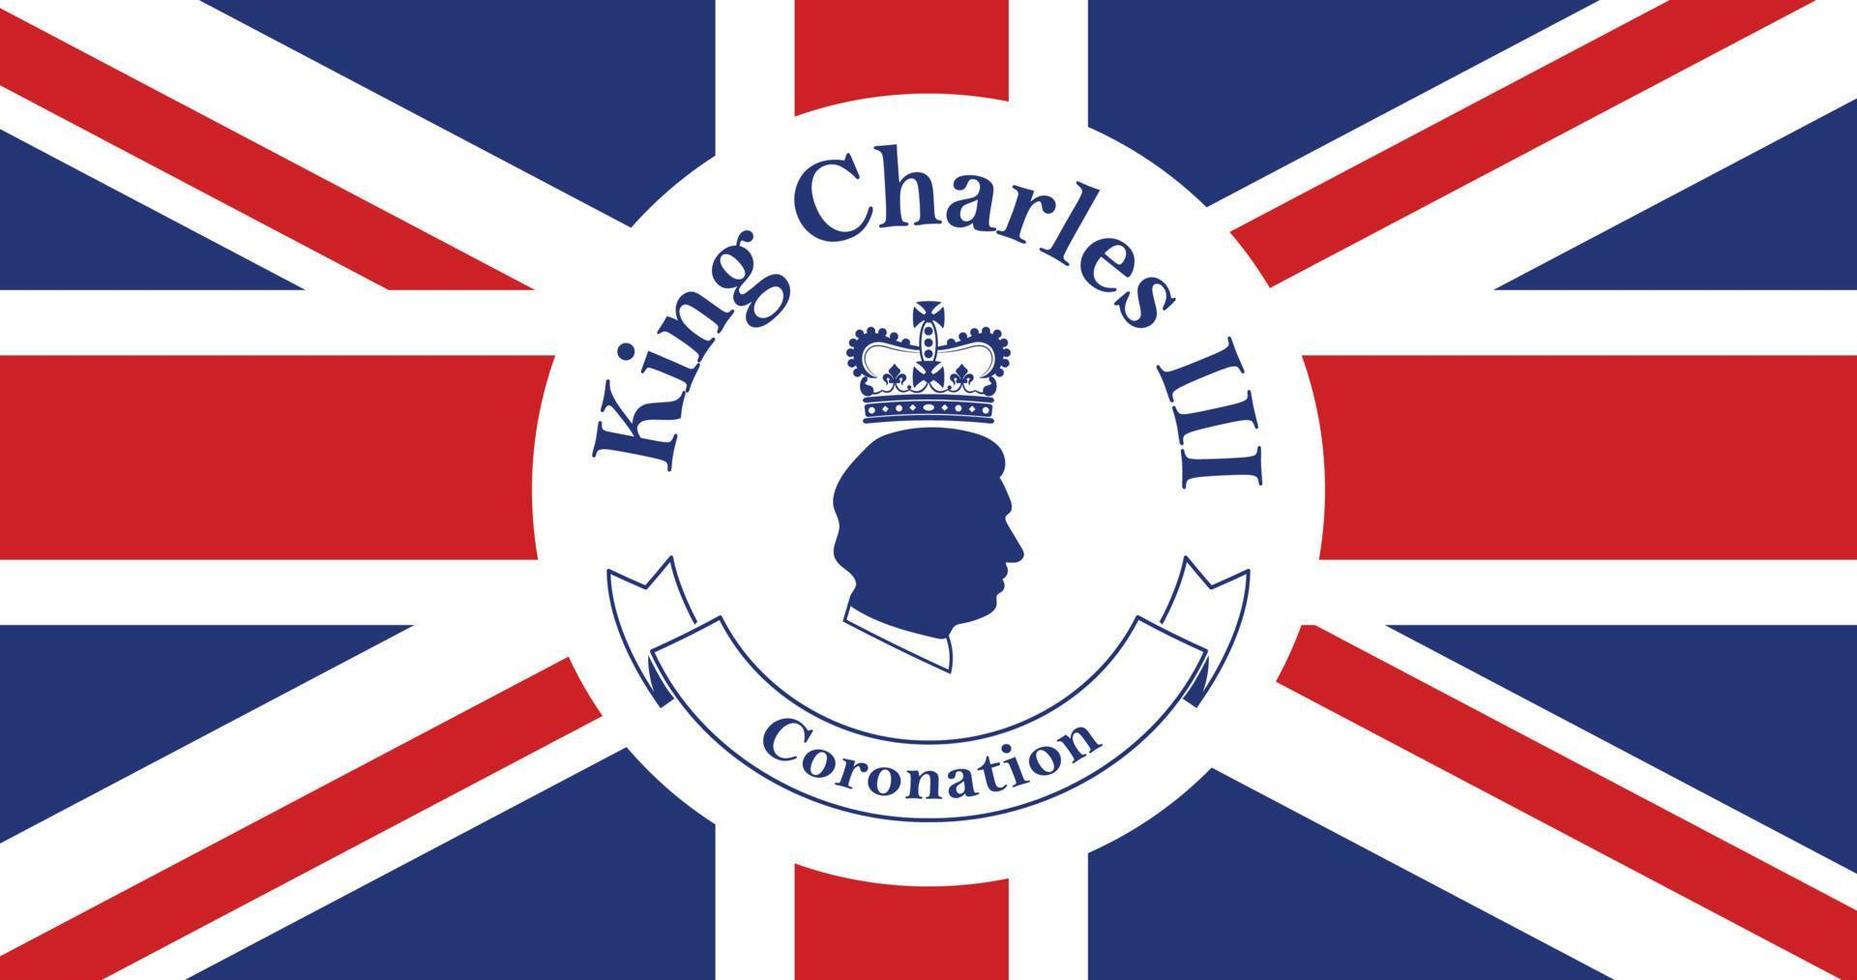 koning Charles iii kroning - prins Charles van Wales wordt koning van Engeland vector